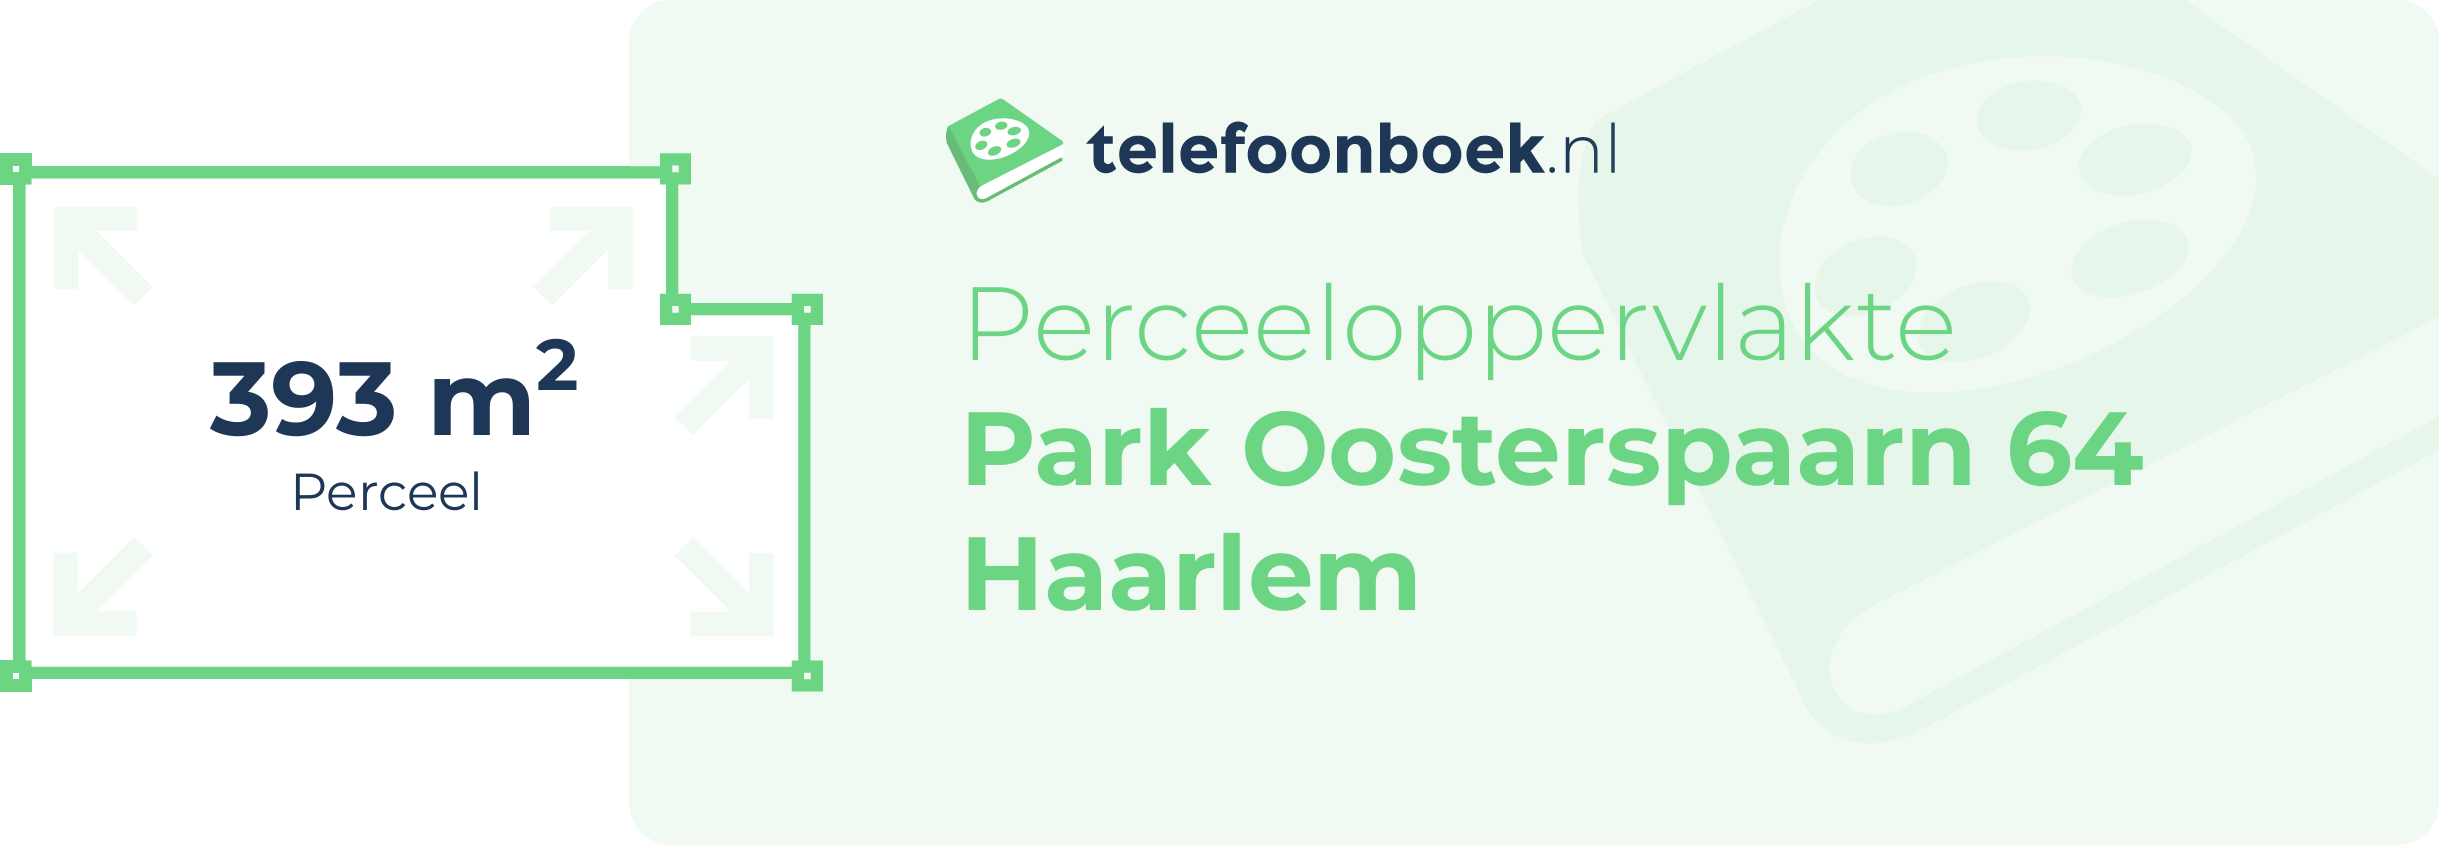 Perceeloppervlakte Park Oosterspaarn 64 Haarlem